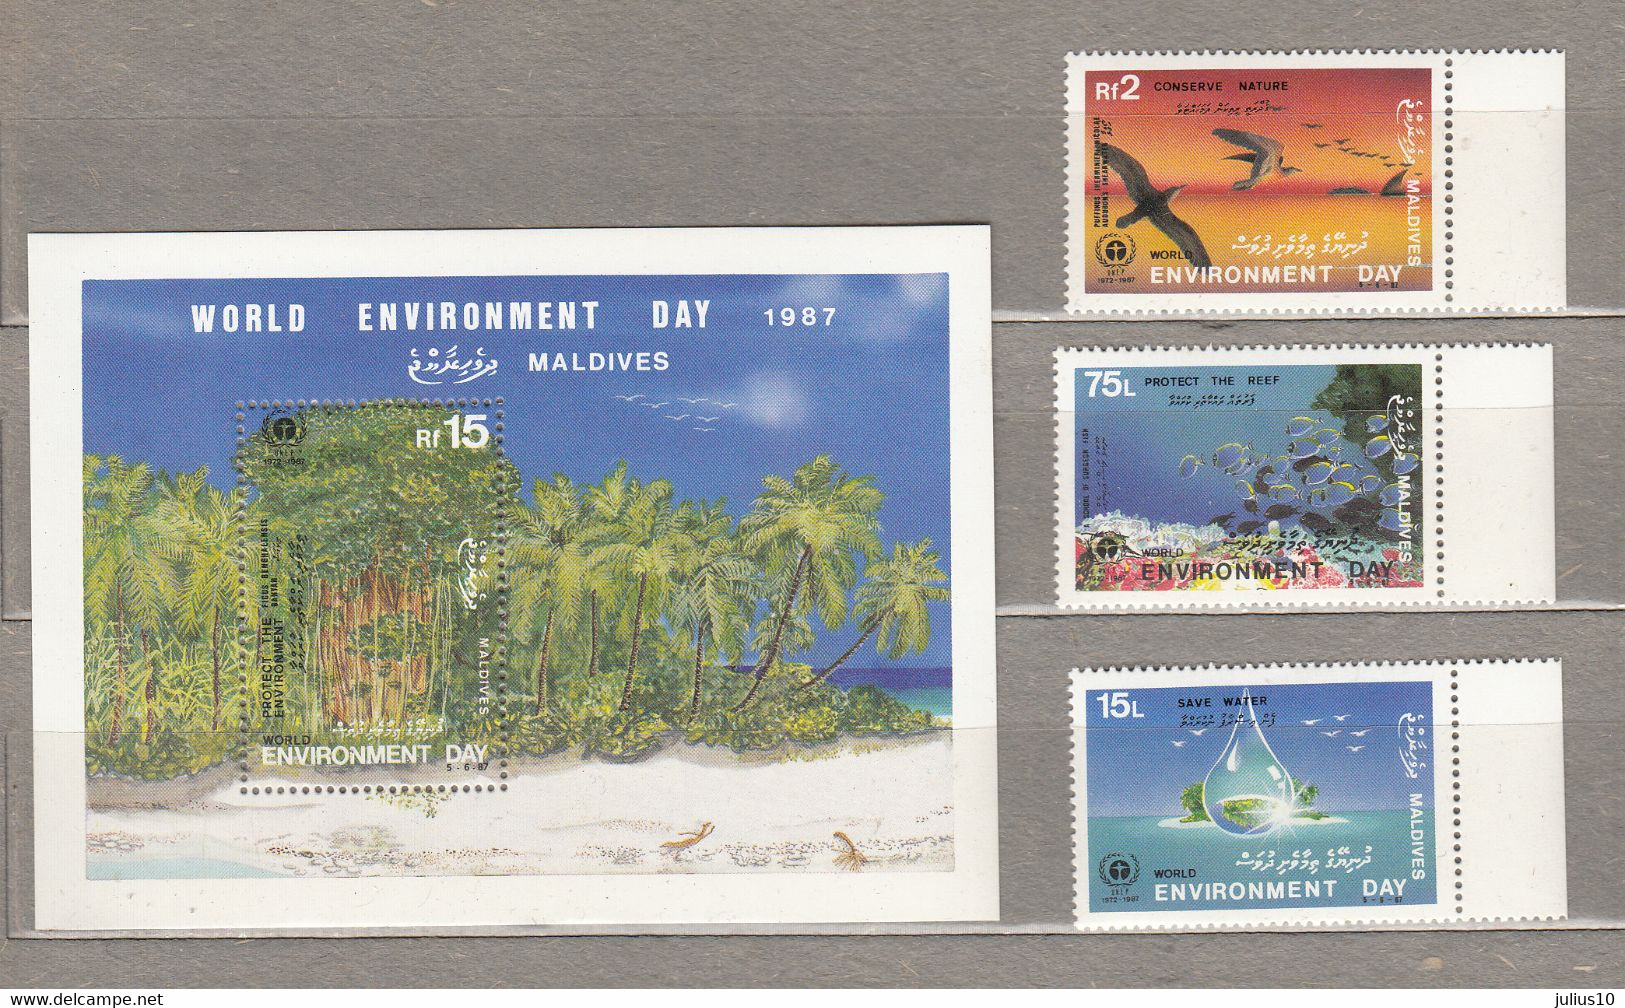 MALDIVE ISL Environment Day 1987 Mi 1074-1075 Block MNH (**) #21061 - Midway Islands